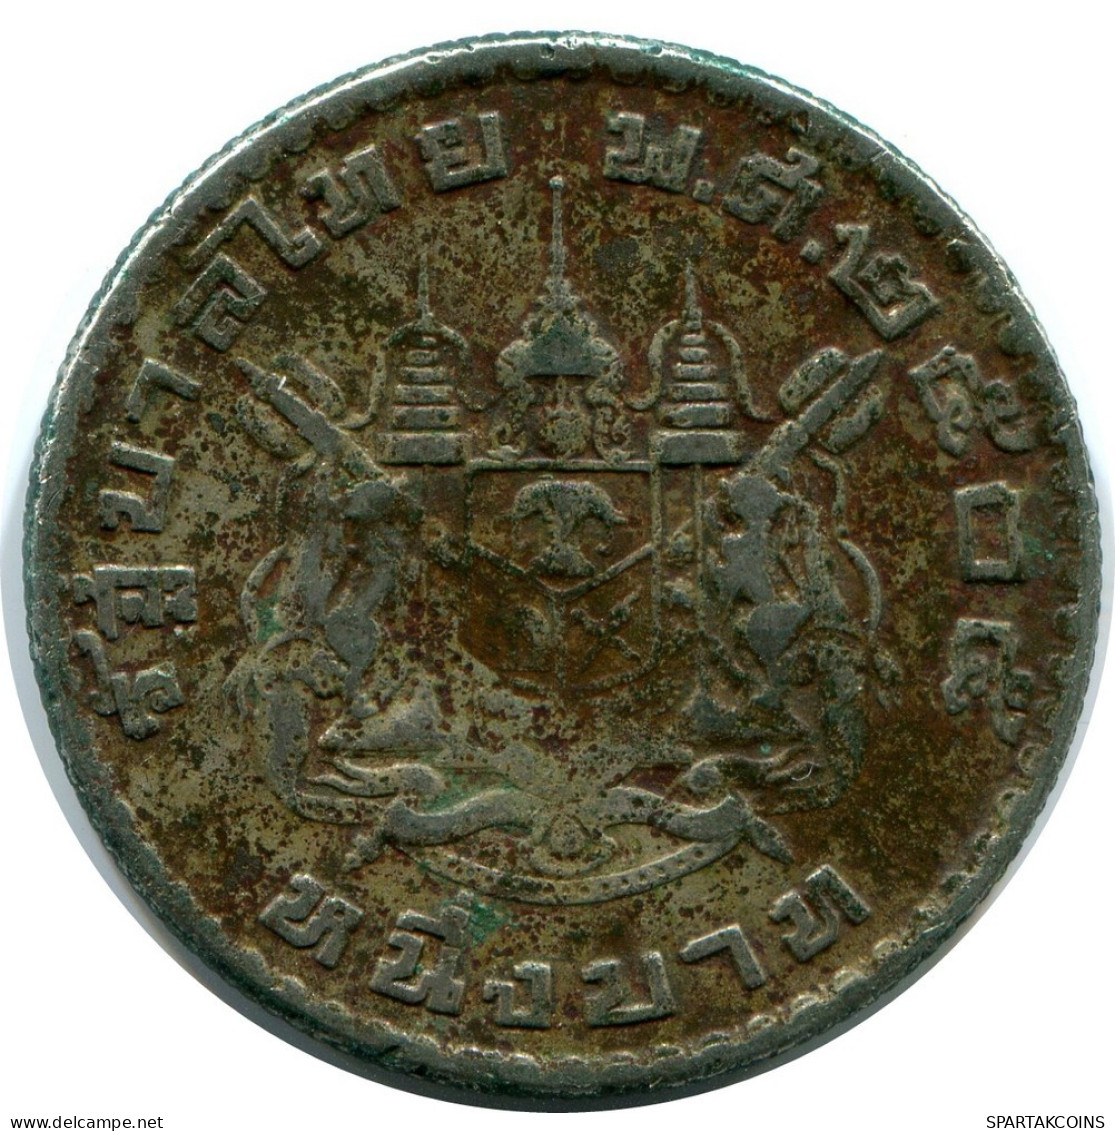 1 BAHT 1962 THAILAND RAMA IX Coin #AZ131.U.A - Thailand